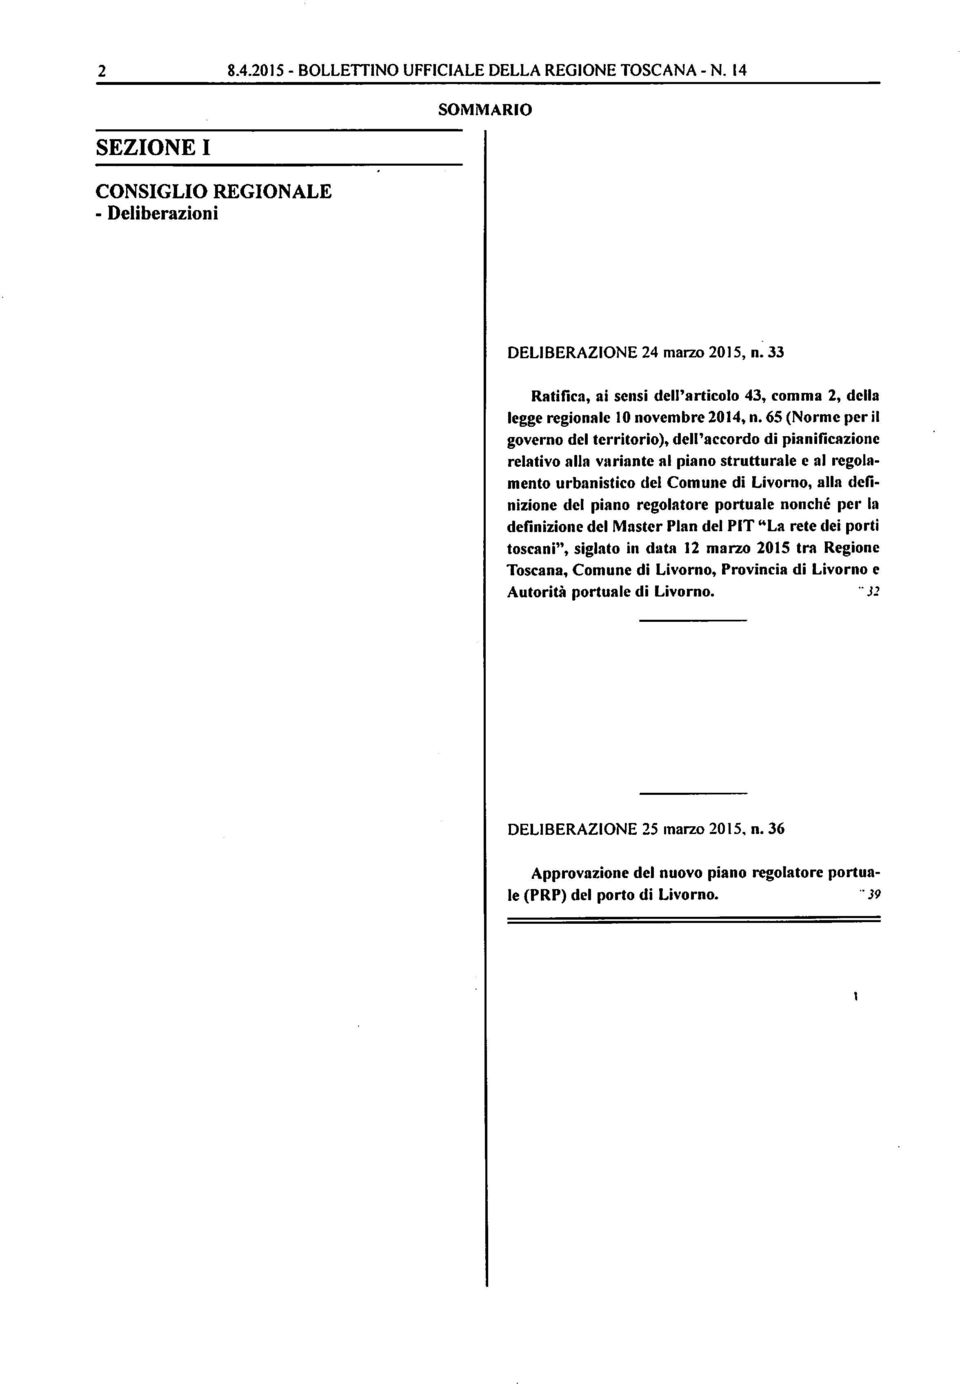 65 (Norme per il governo del territorio), dell'accordo di pianificazione relativo alla variante al piano strutturale e al regola mento urbanistico del Comune di Livorno, alla defi nizione del